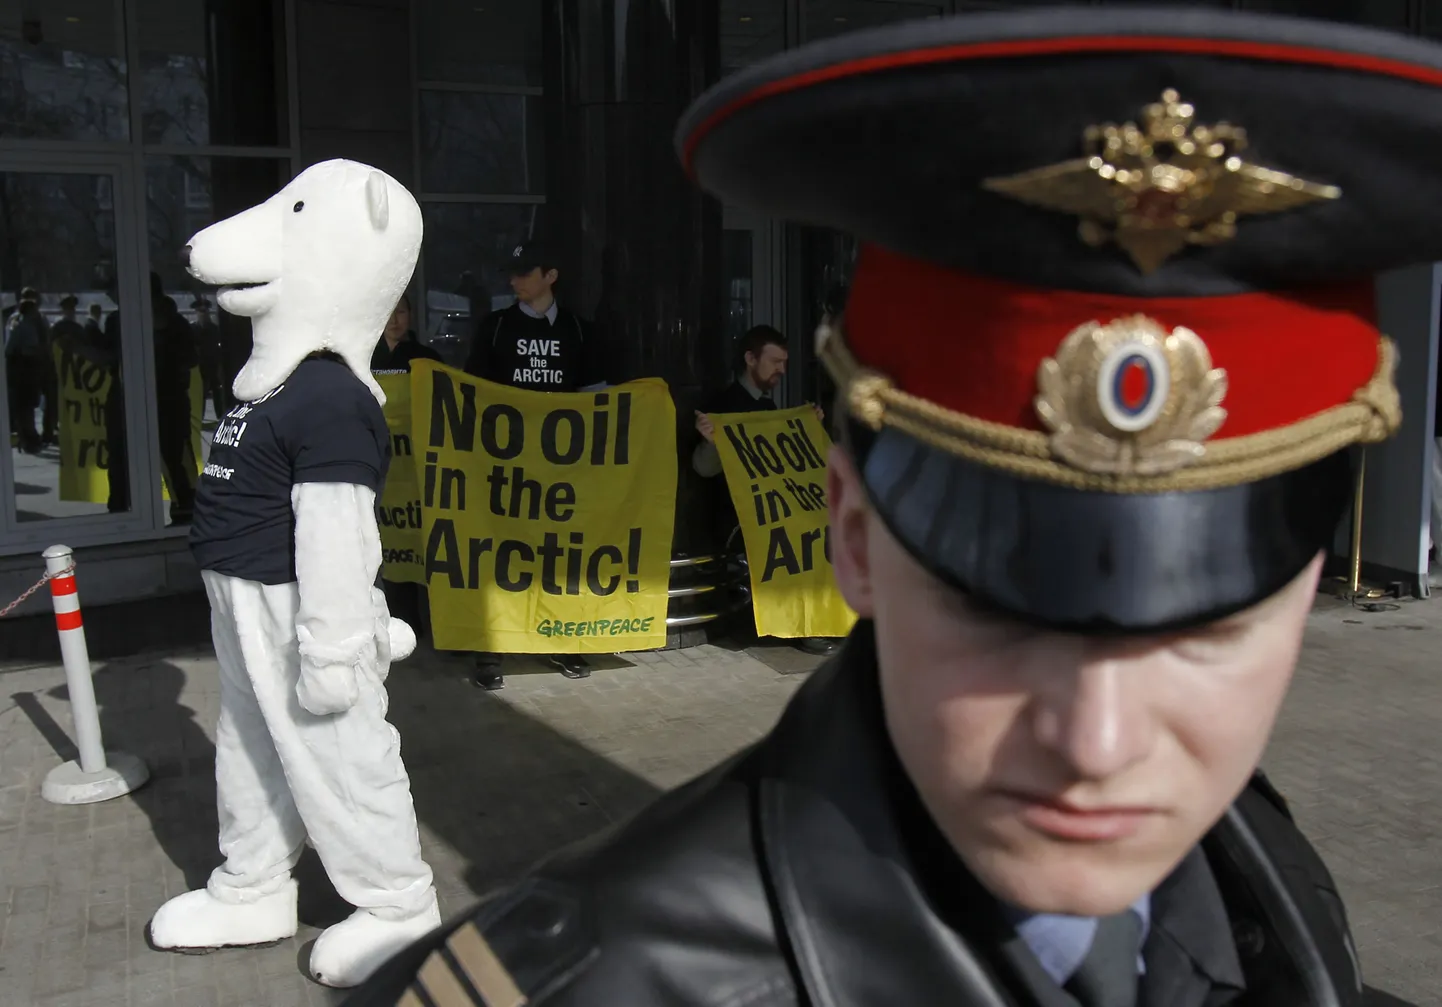 Vene politseinik möödumas keskkonnaaktivistide meeleavaldusest.